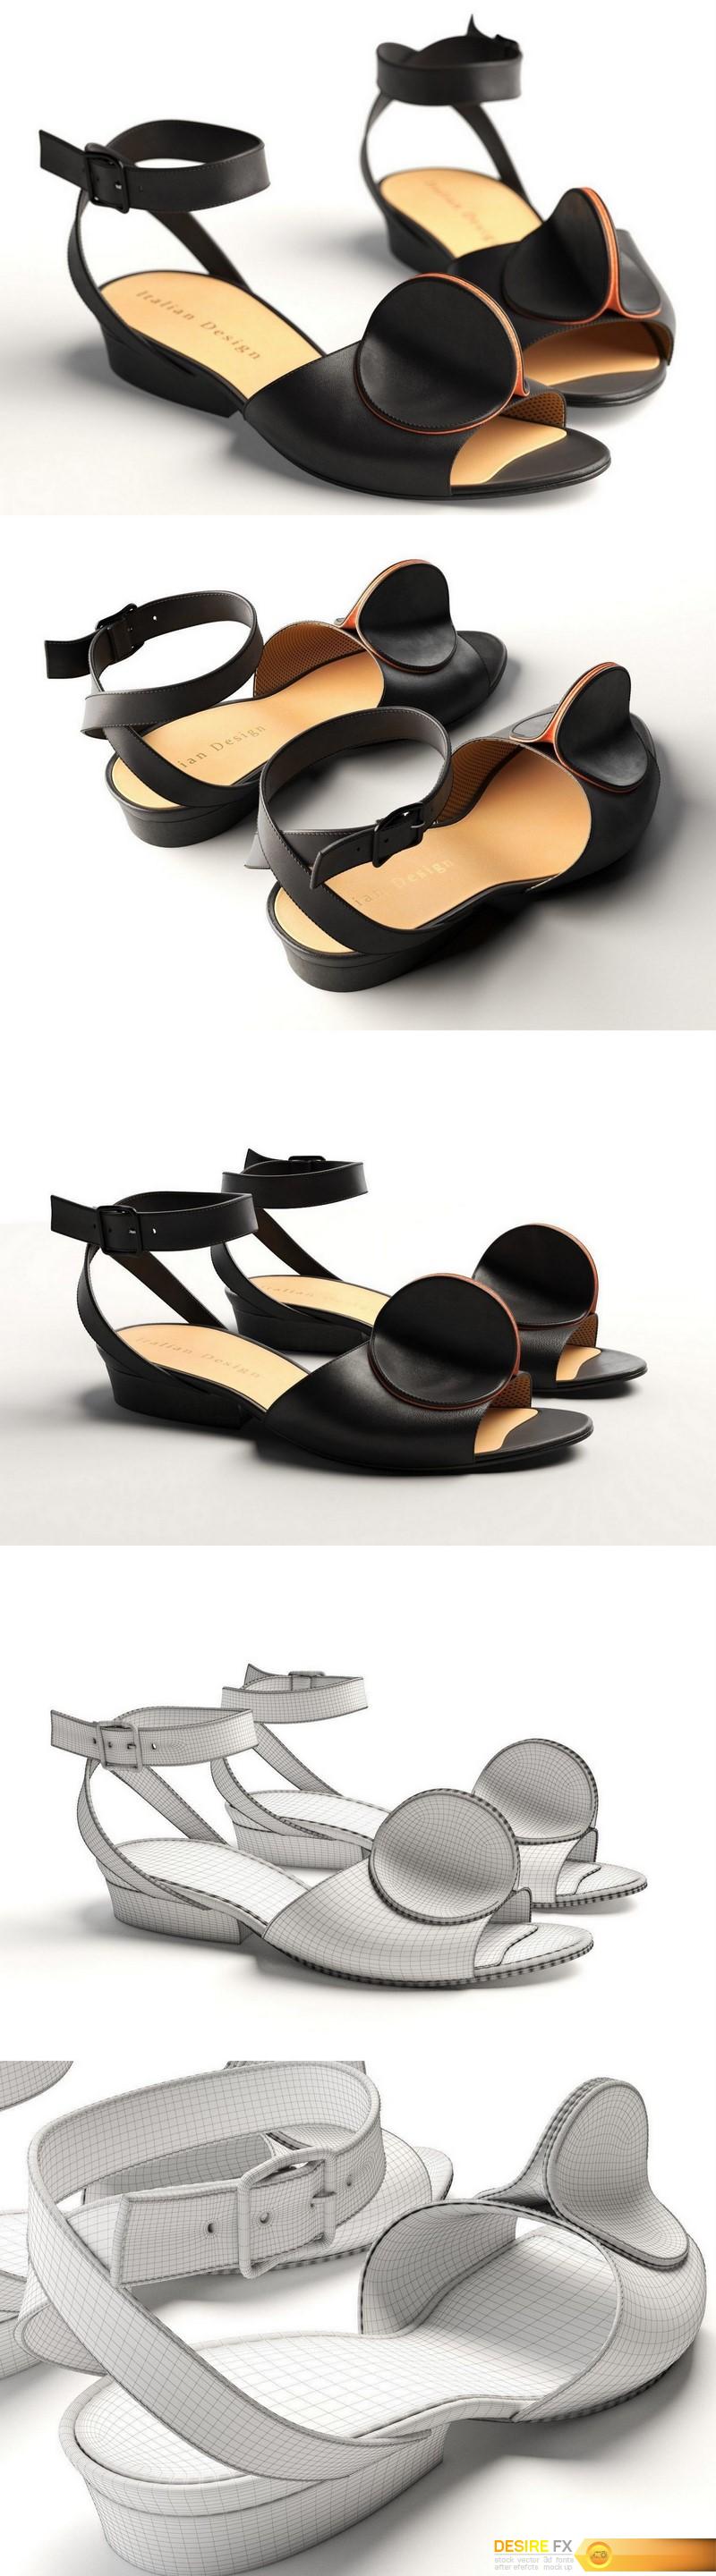 Desire FX 3d models | Cgtrader – Bijou Leather Strap Sandals 3D model